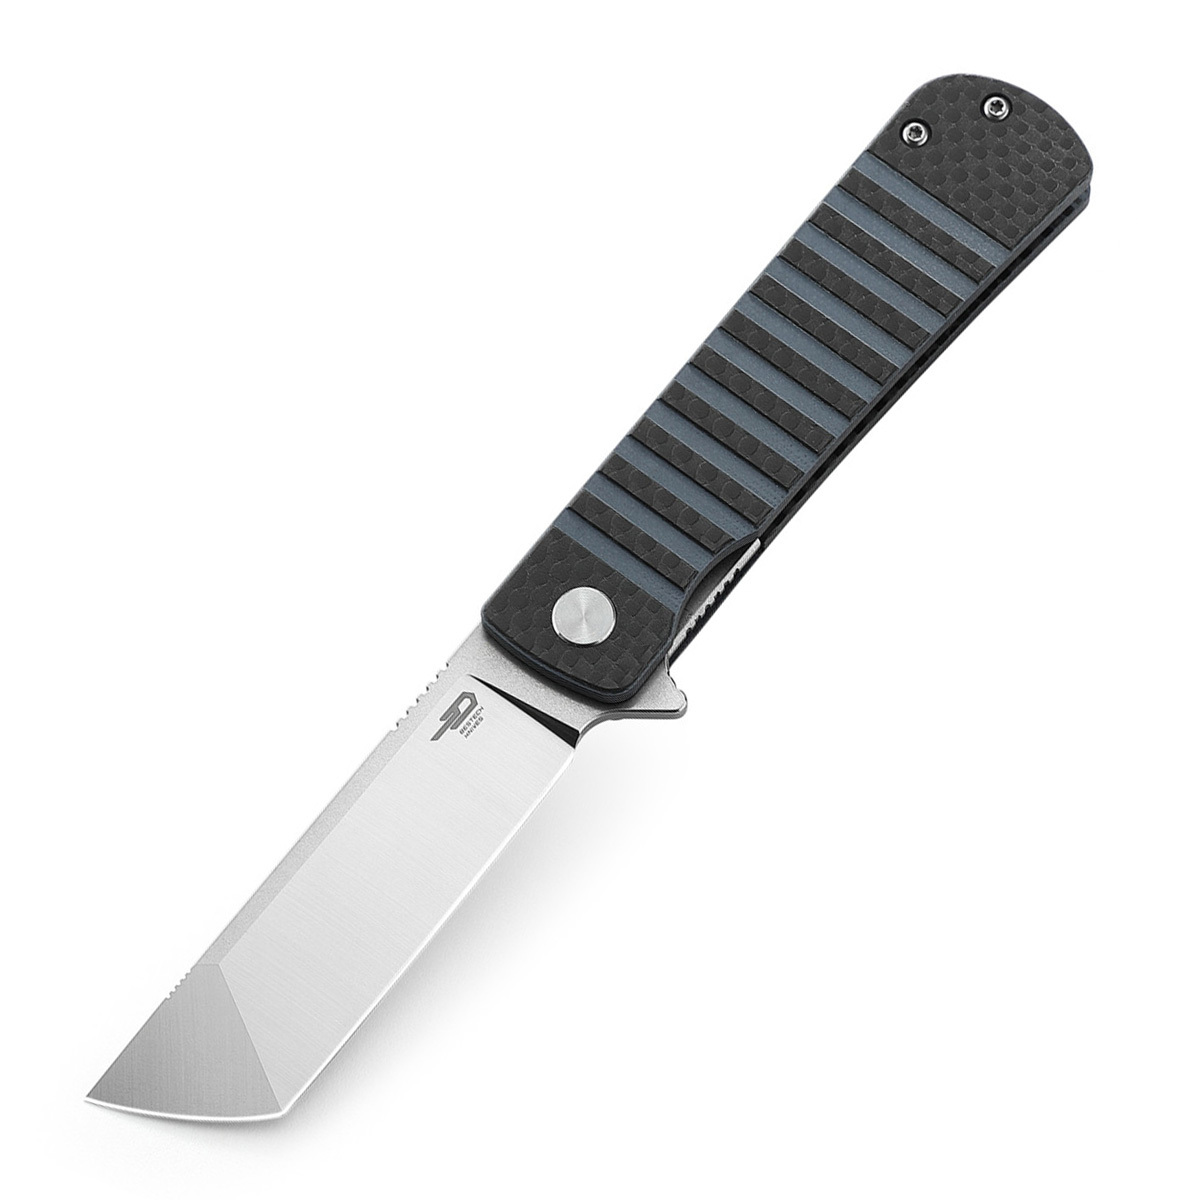 Складной нож Bestech Titan, сталь 154CM, рукоять черно-синяя G10/карбон складной нож bestech swordfish оранжевый d2